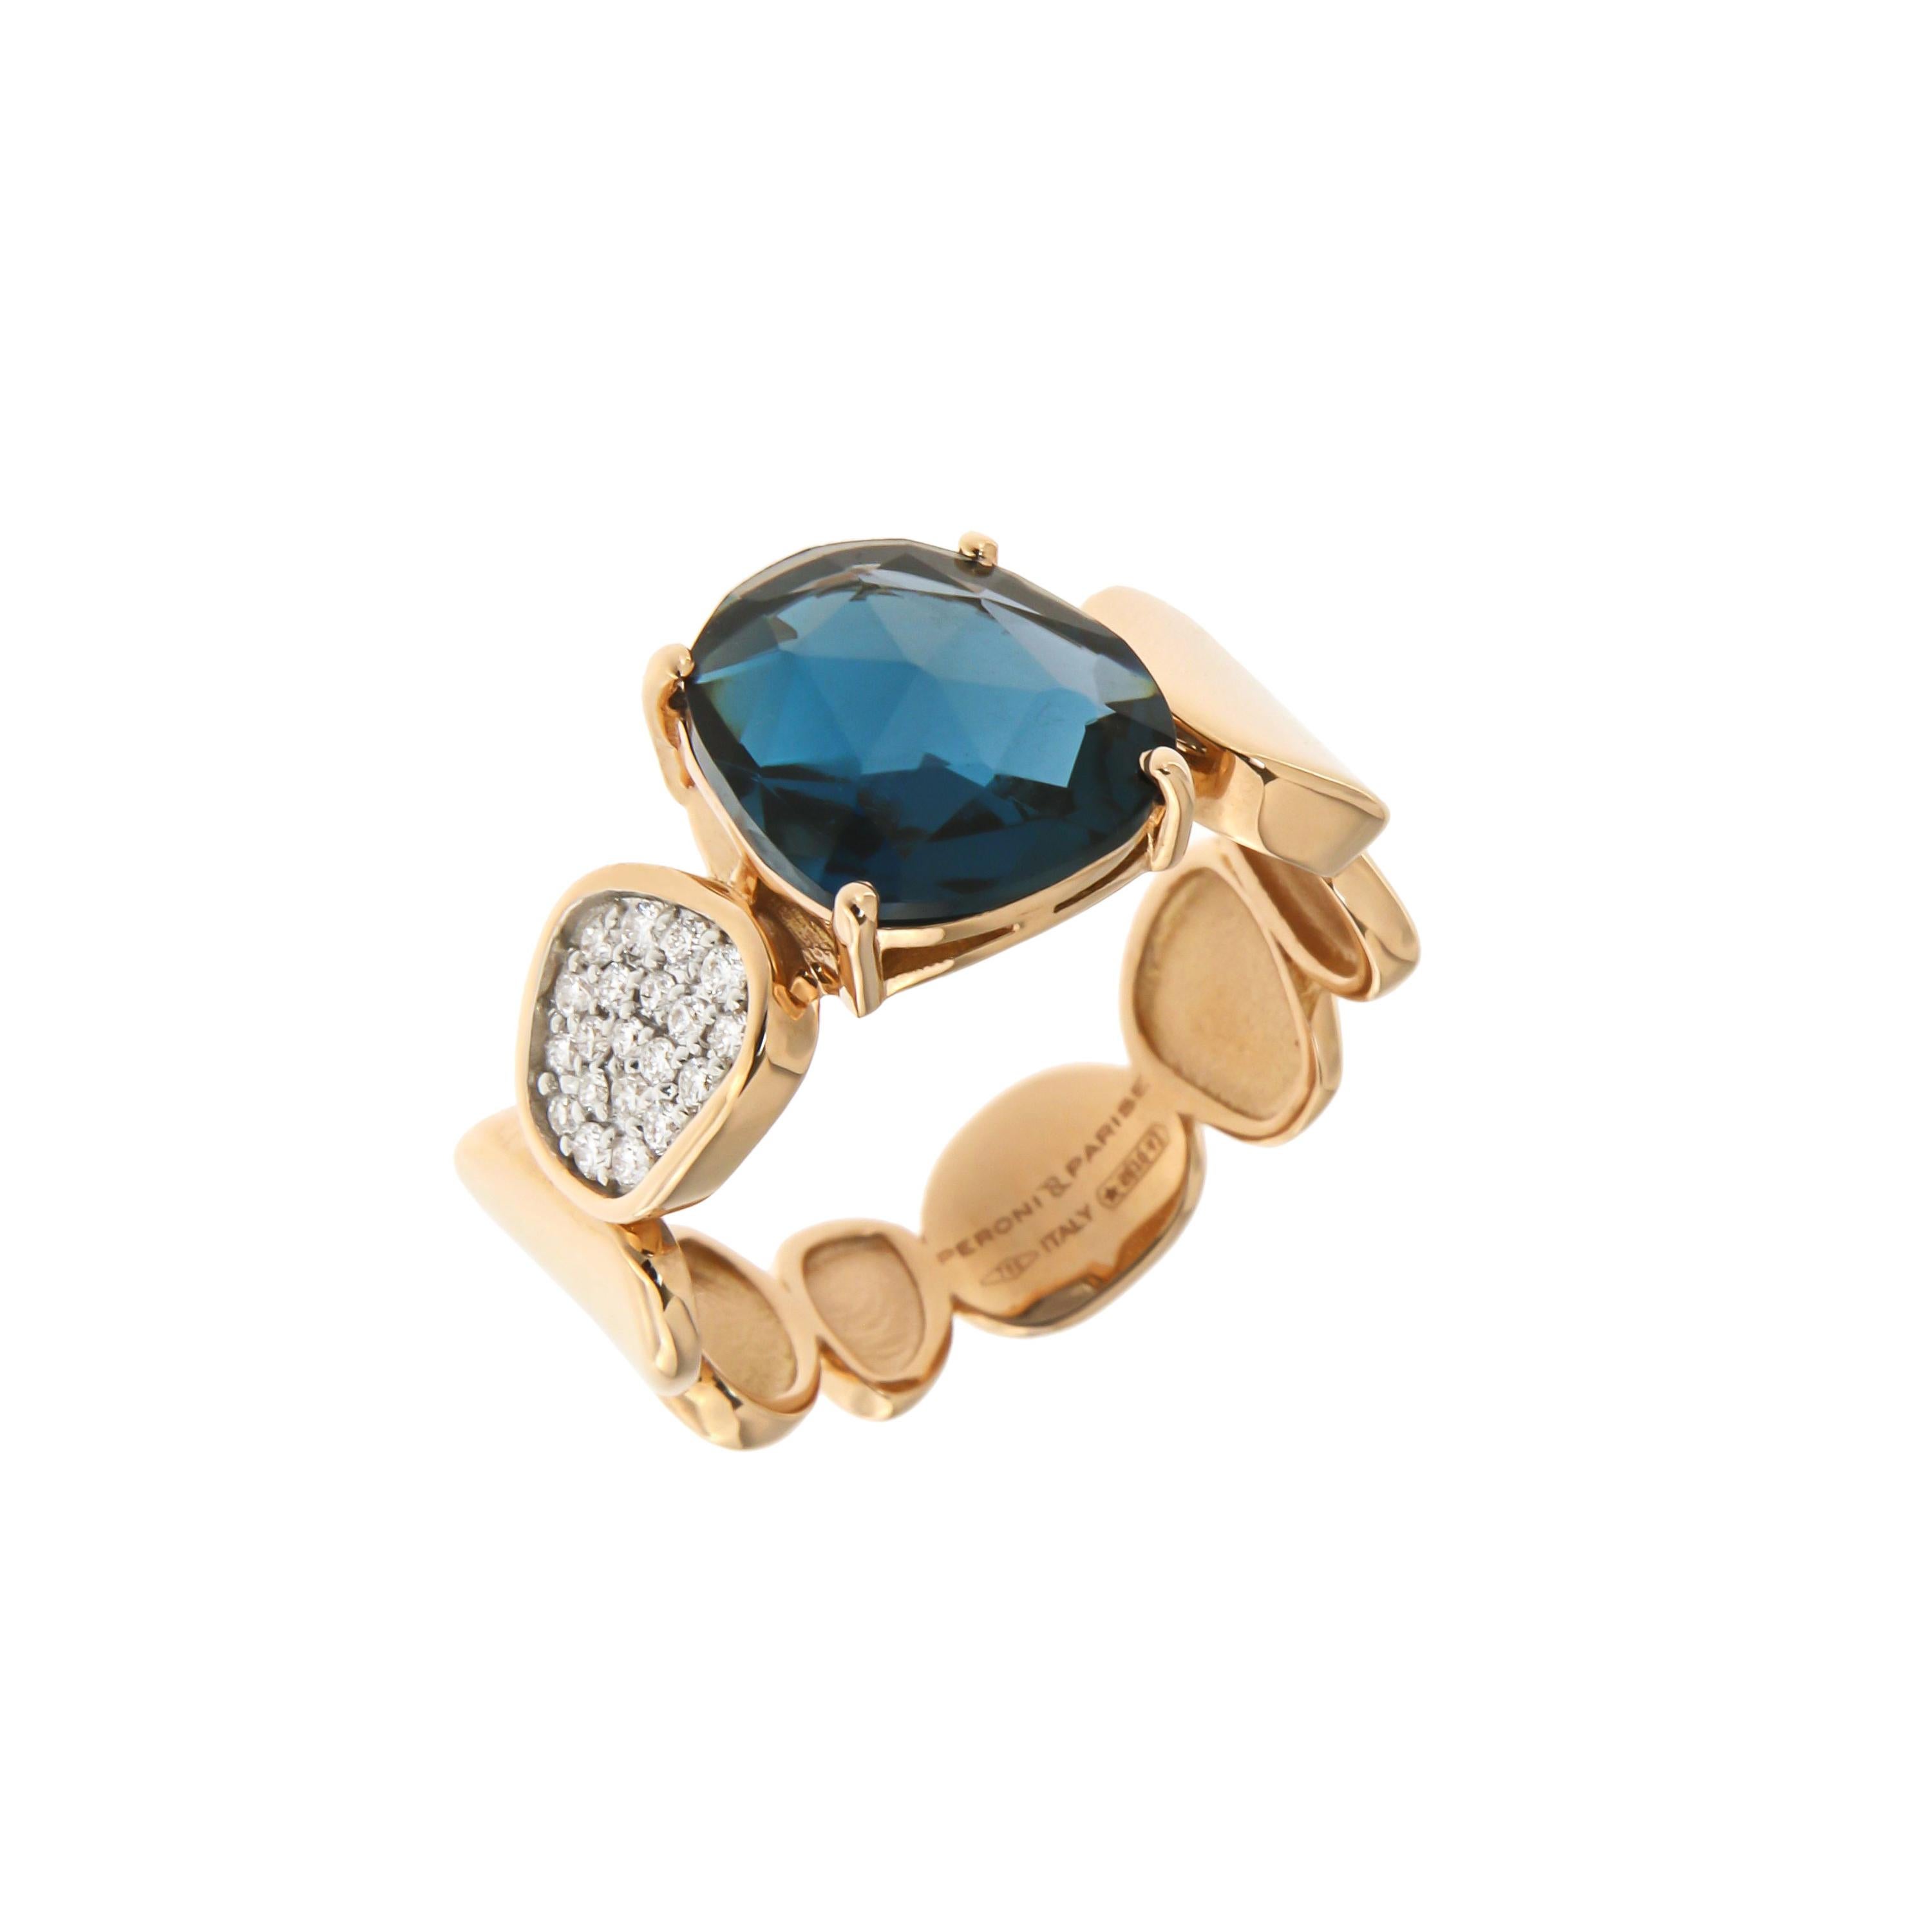 Fabuleuse bague italienne fantaisie en or 18 carats avec topaze bleue de Londres et diamants, pour elle